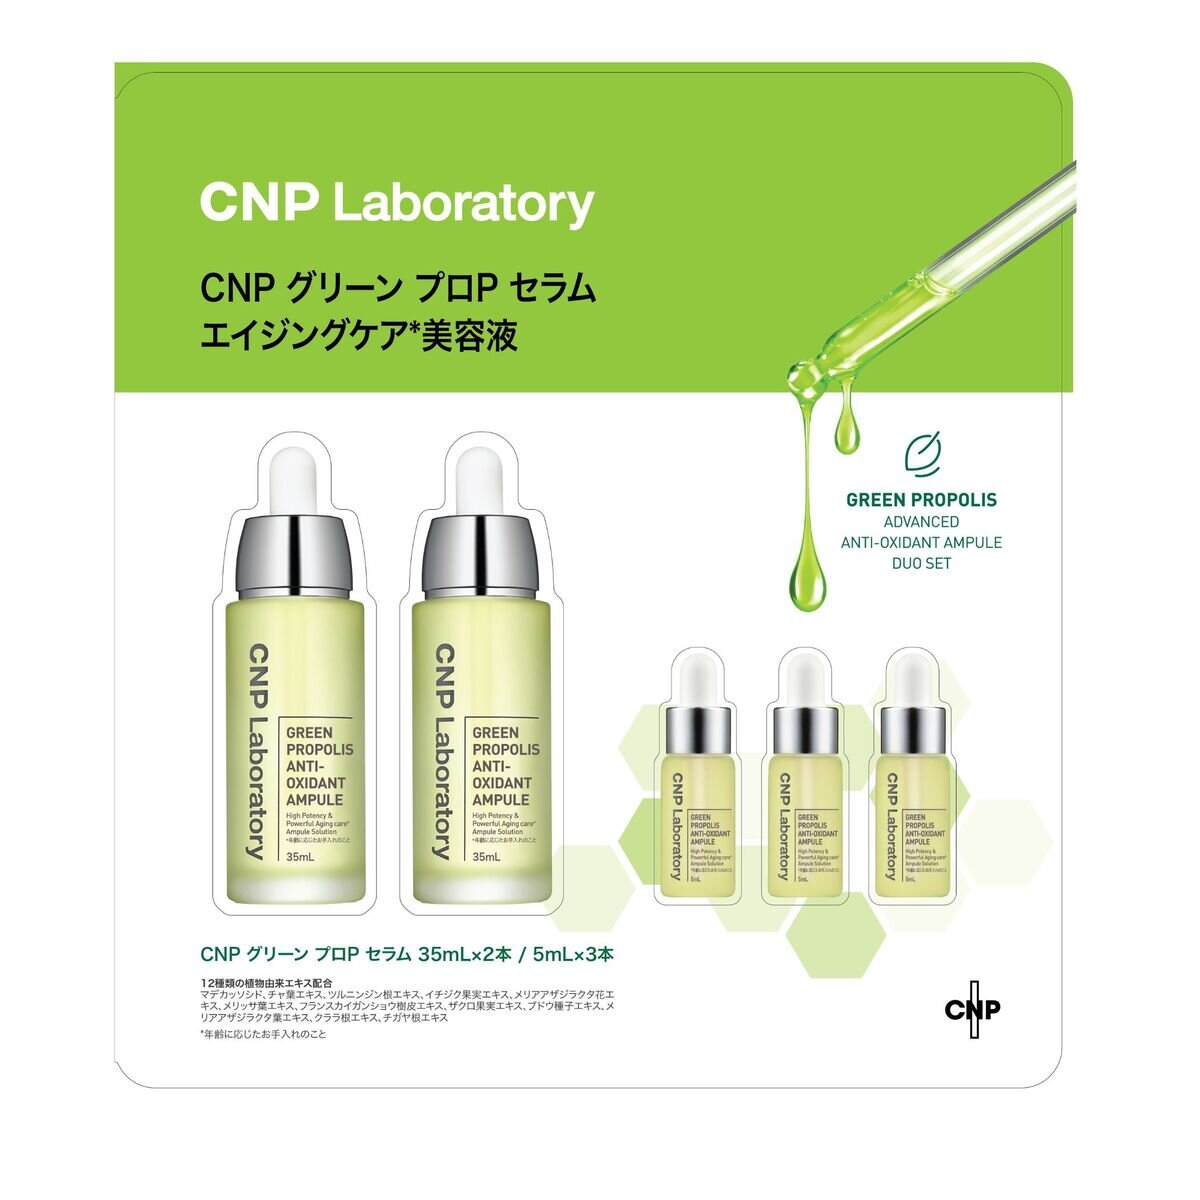 シーエヌピーラボラトリー CNP Laboratory グリーンプロPセラム デュオセット | Costco Japan